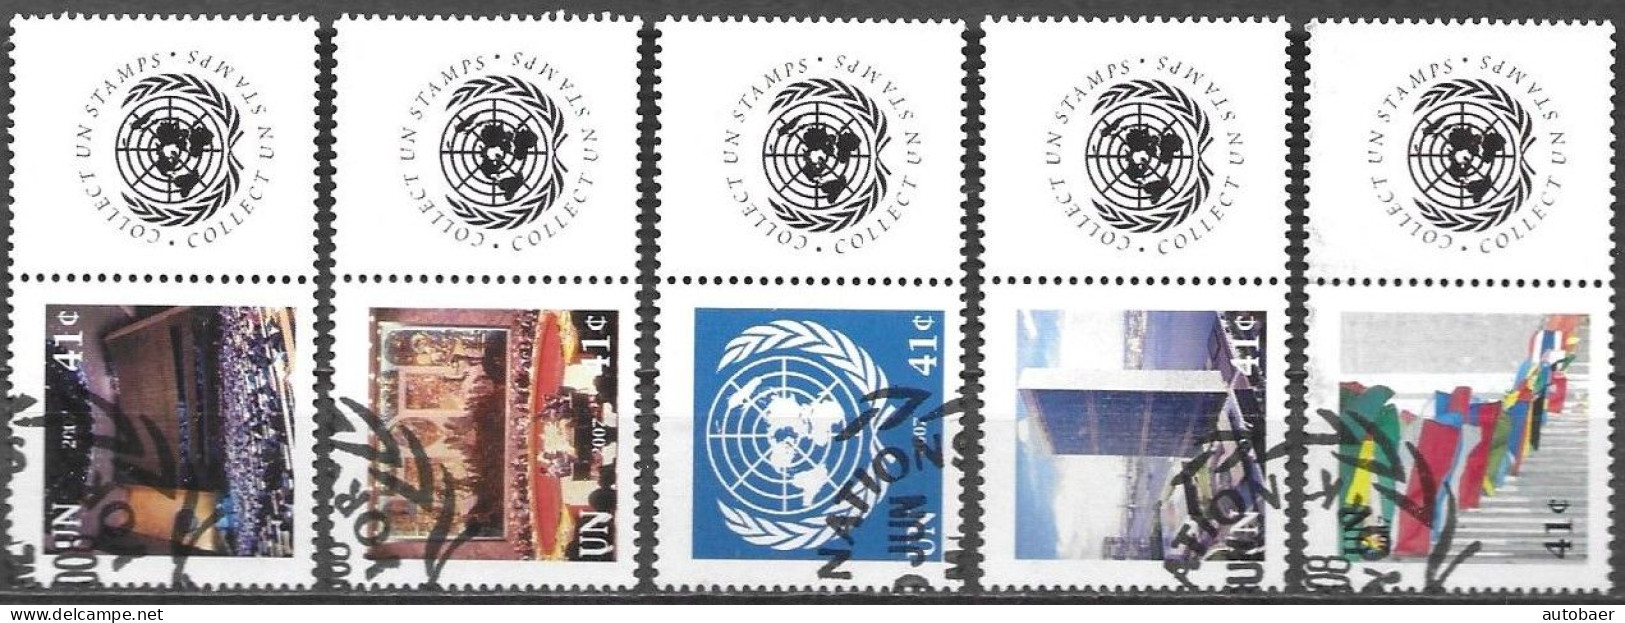 United Nations UNO UN Vereinte Nationen New York 2007 Greetings Mi. No. 1057-61 Label Used Cancelled Oblitéré - Oblitérés